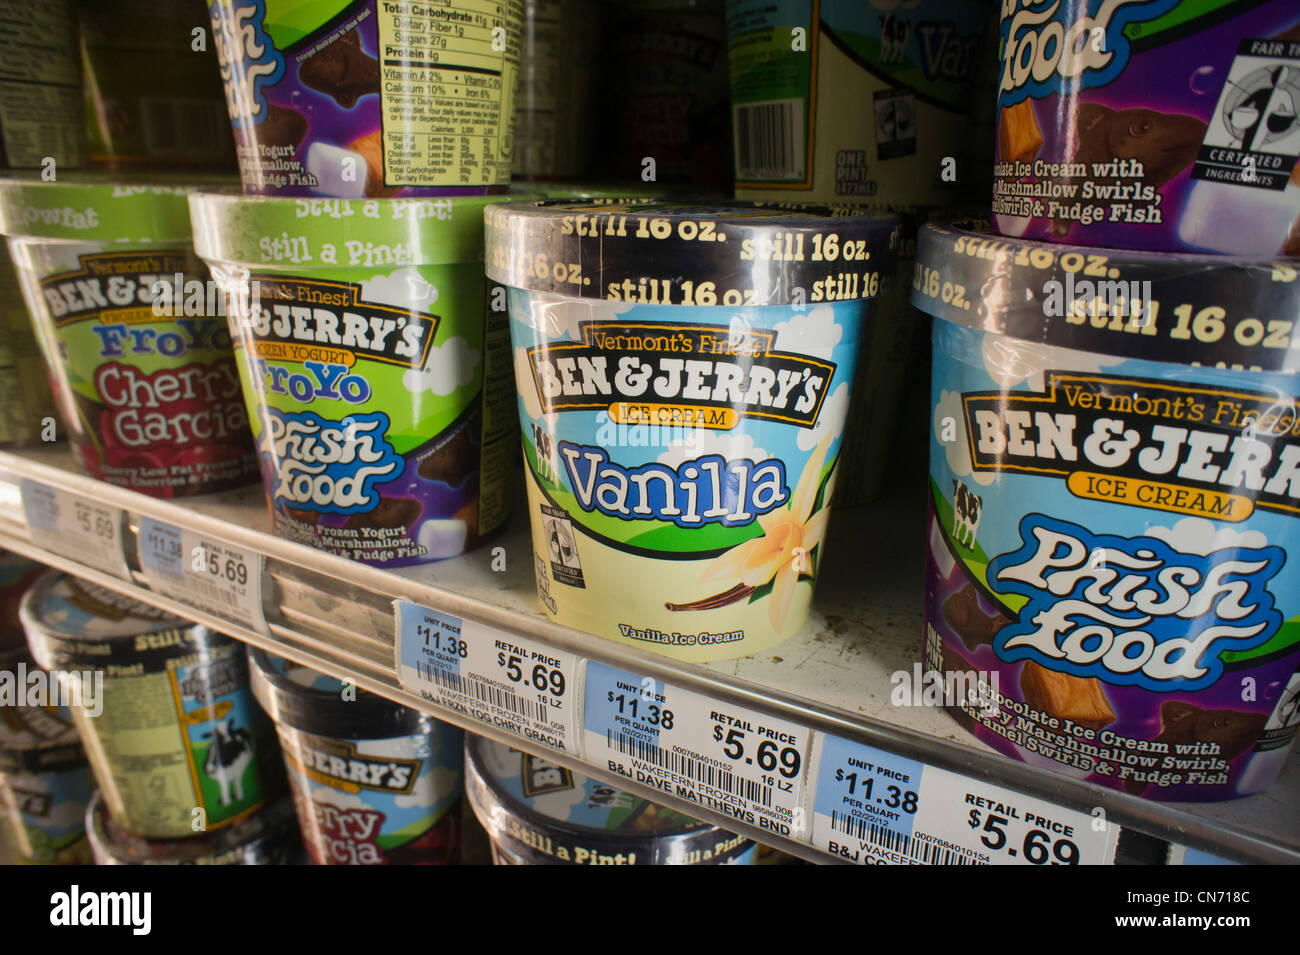 https://c8.alamy.com/comp/CN718C/pints-of-assorted-flavors-of-ben-jerrys-ice-cream-including-vanilla-CN718C.jpg